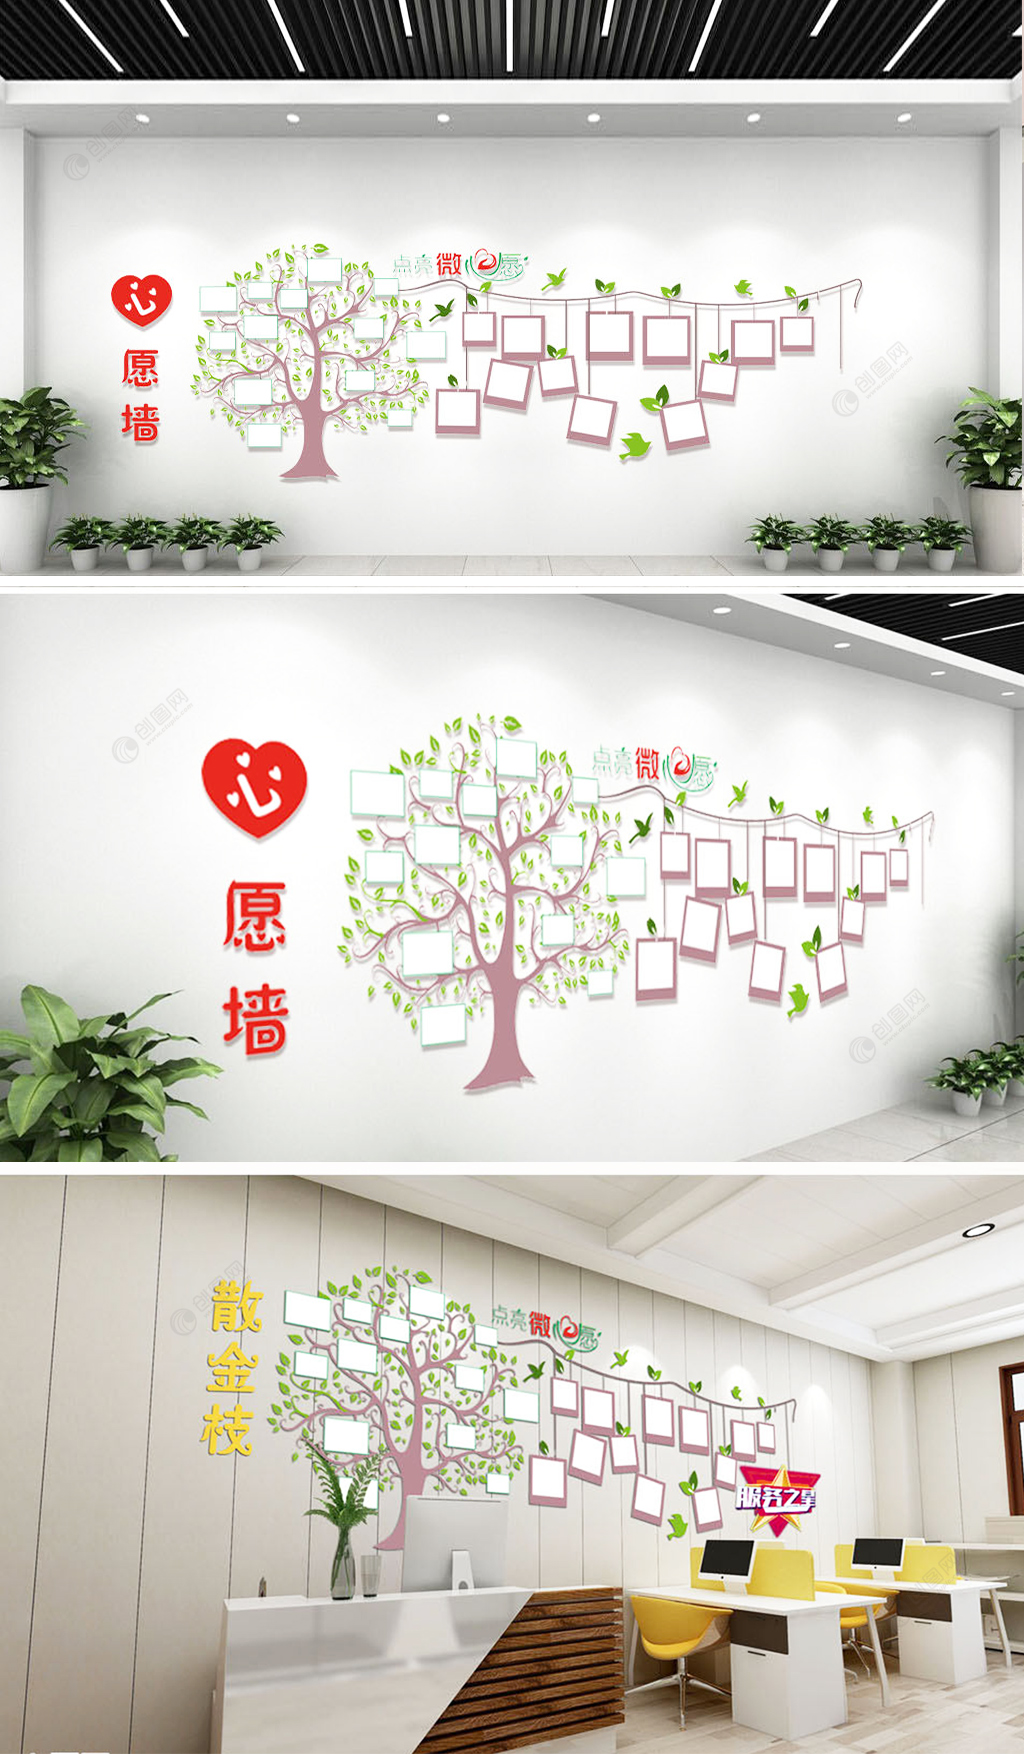 树形微心愿墙服务之星心愿树企业校园文化墙设计